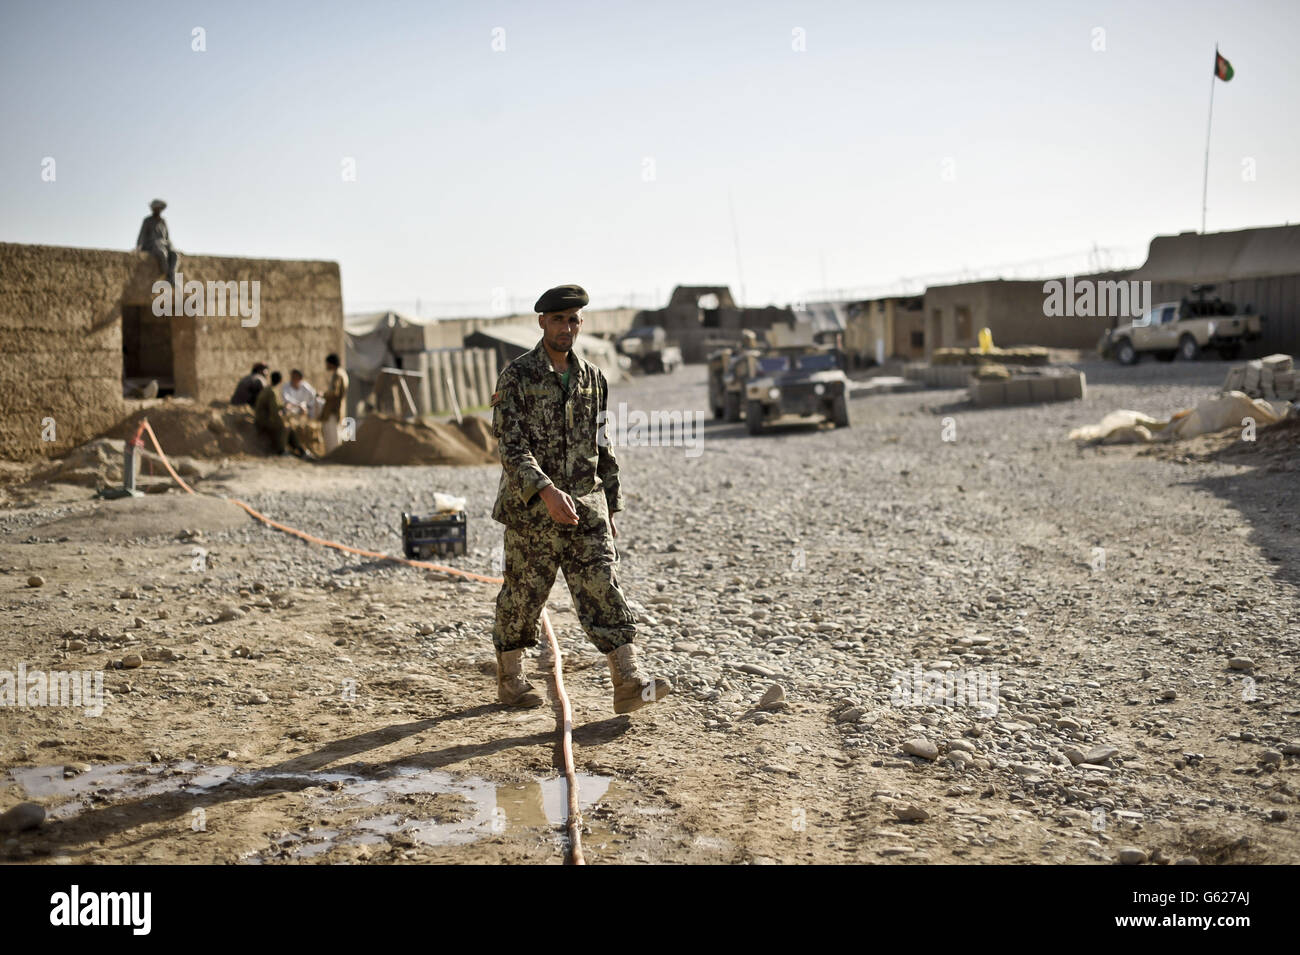 Un soldato dell'esercito nazionale afgano pervade i lavori di costruzione afghani alla base di pattuglia Clifton, ora rinominata PB Oqab, poiché ospita solo soldati dell'esercito nazionale afghano e viene costruito per soddisfare le loro specifiche esigenze, mentre le forze ISAF iniziano a affidare le basi e a lasciare l'Afghanistan nel 2014. Foto Stock